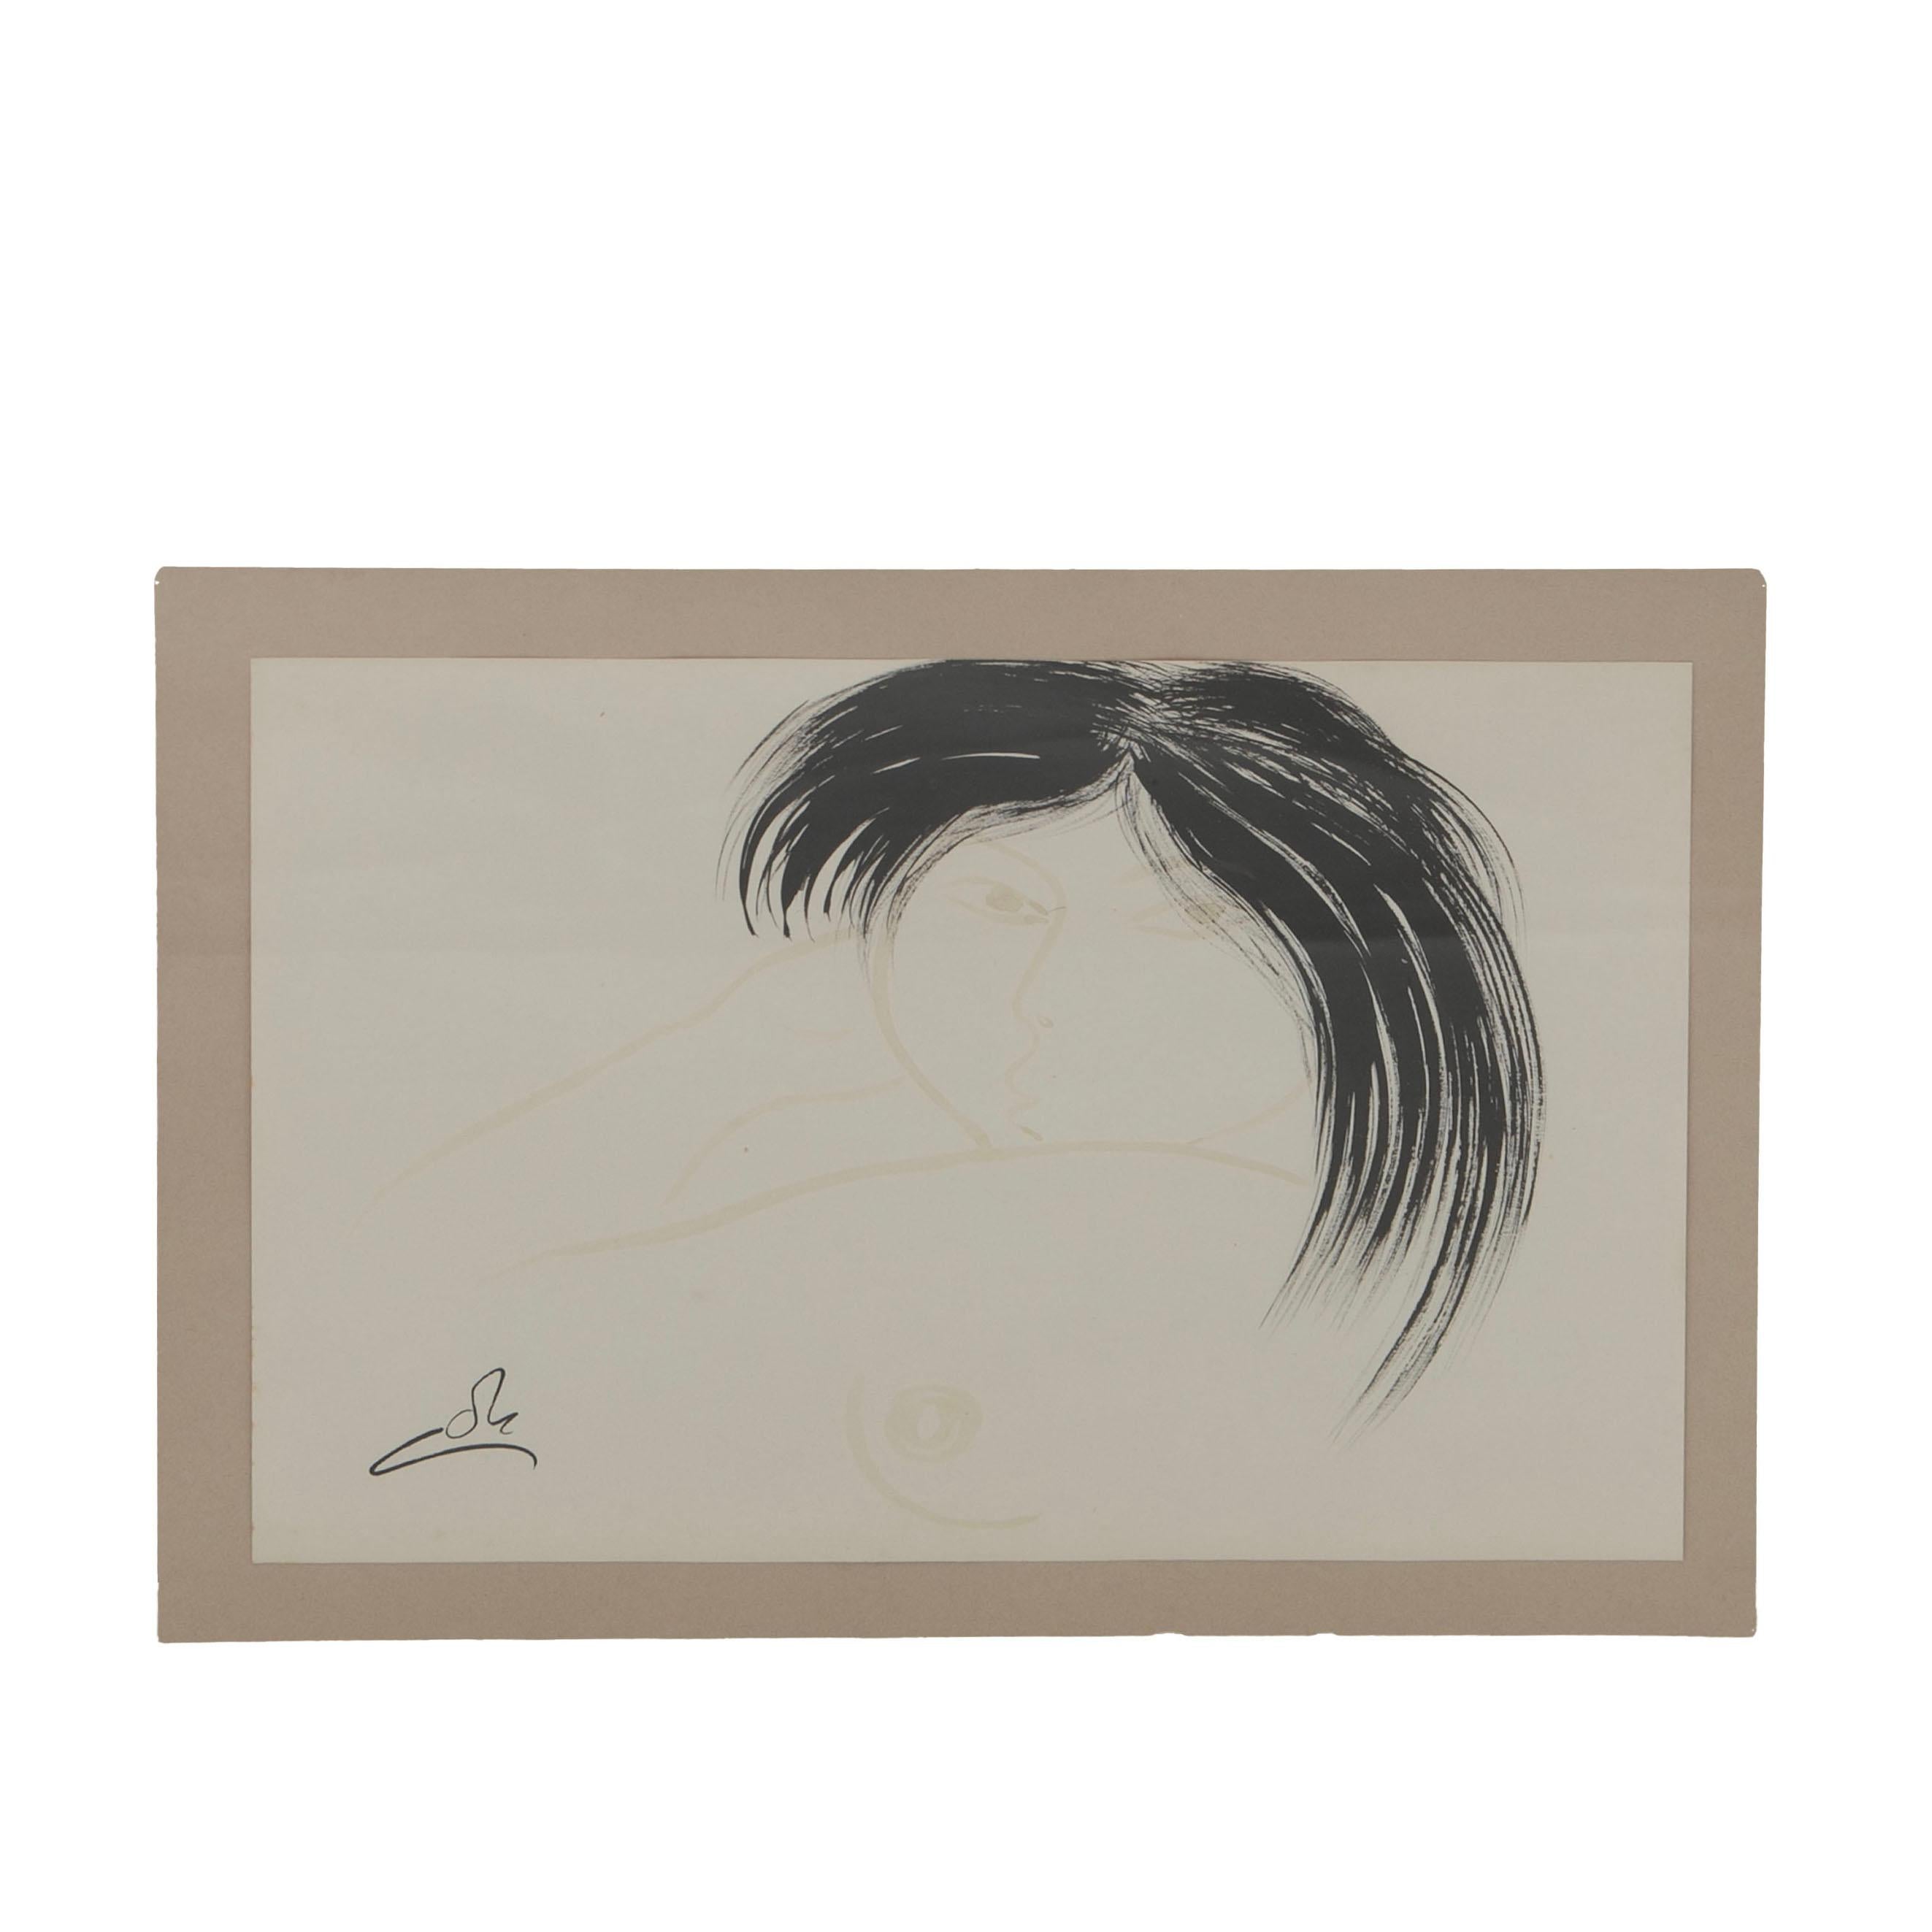 Aage Gitz-Johansen (Dänisch, 1897-1977)
Aquarell und Markerzeichnung, die eine junge Grönländerin darstellt. 

Maße des Blattes: 27,5 cm x 36,5 cm.

Signiert mit Monogram